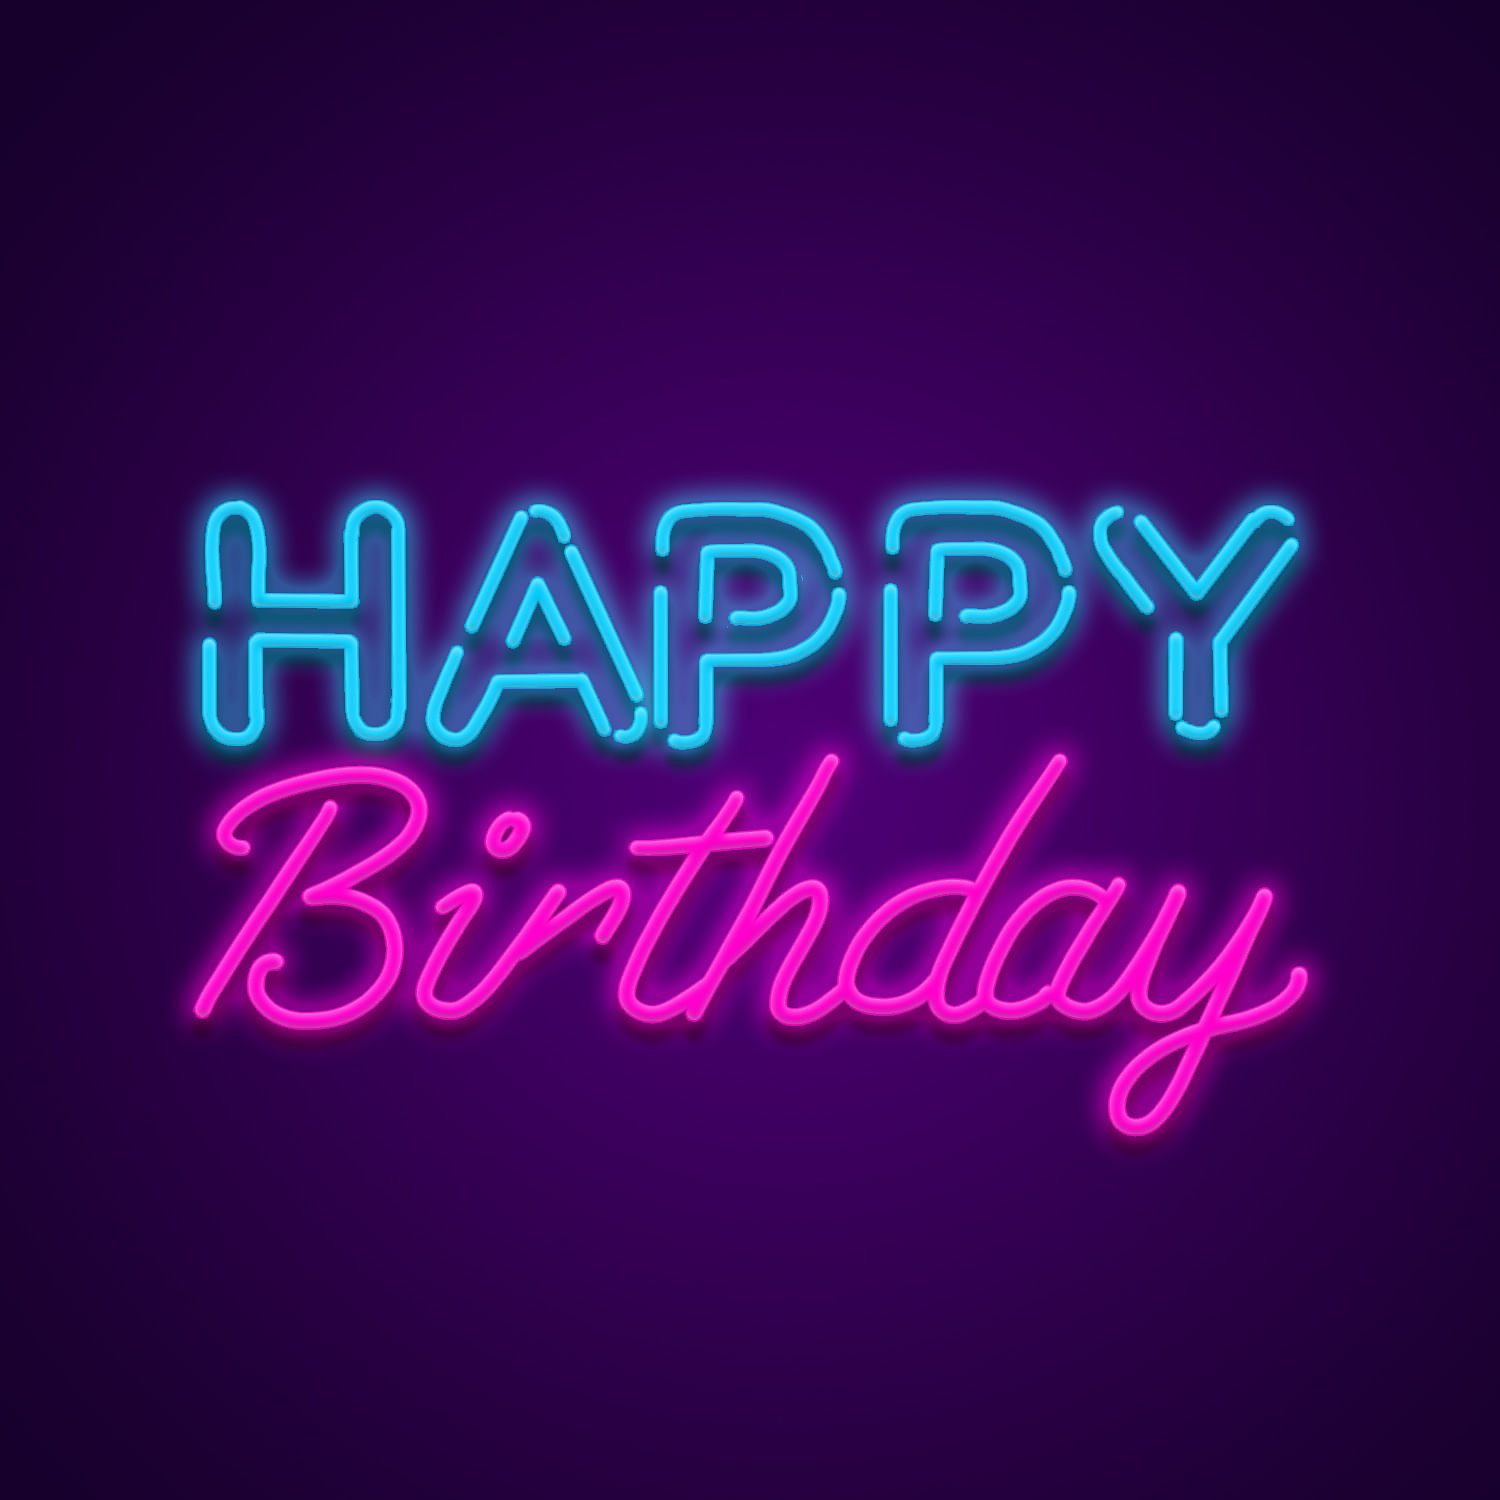 Happy Birthday - Neon Sign